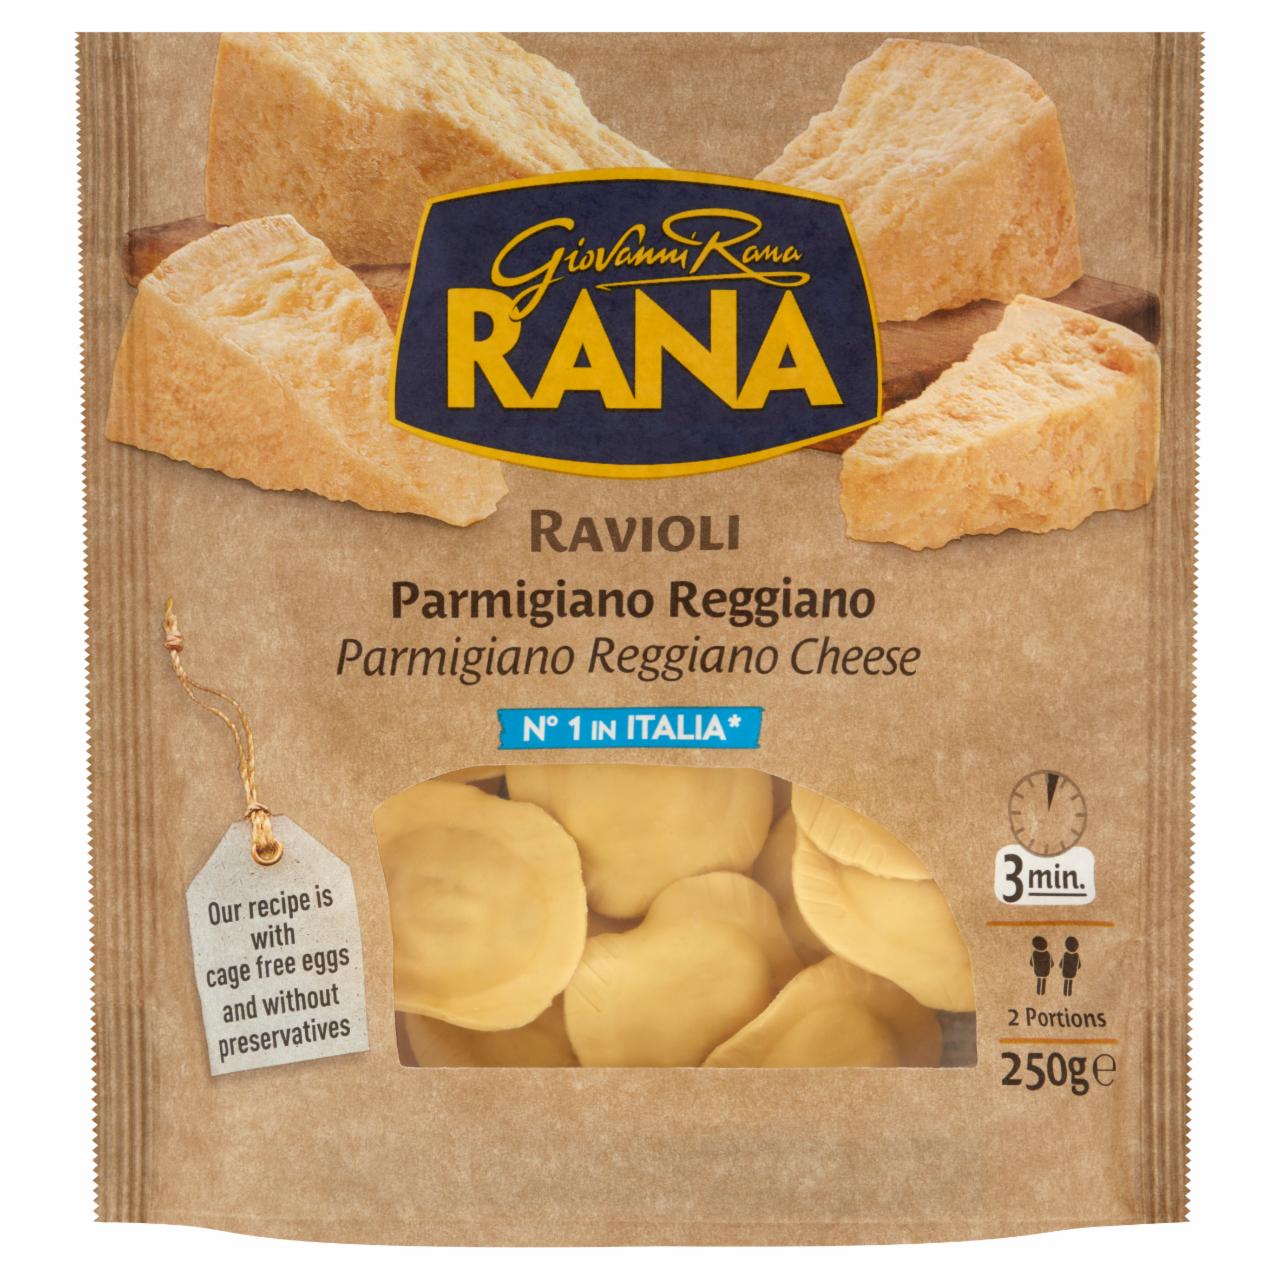 Képek - Giovanni Rana Ravioli Parmigiano Reggiano tojásos friss tészta sajtos töltelékkel 250 g